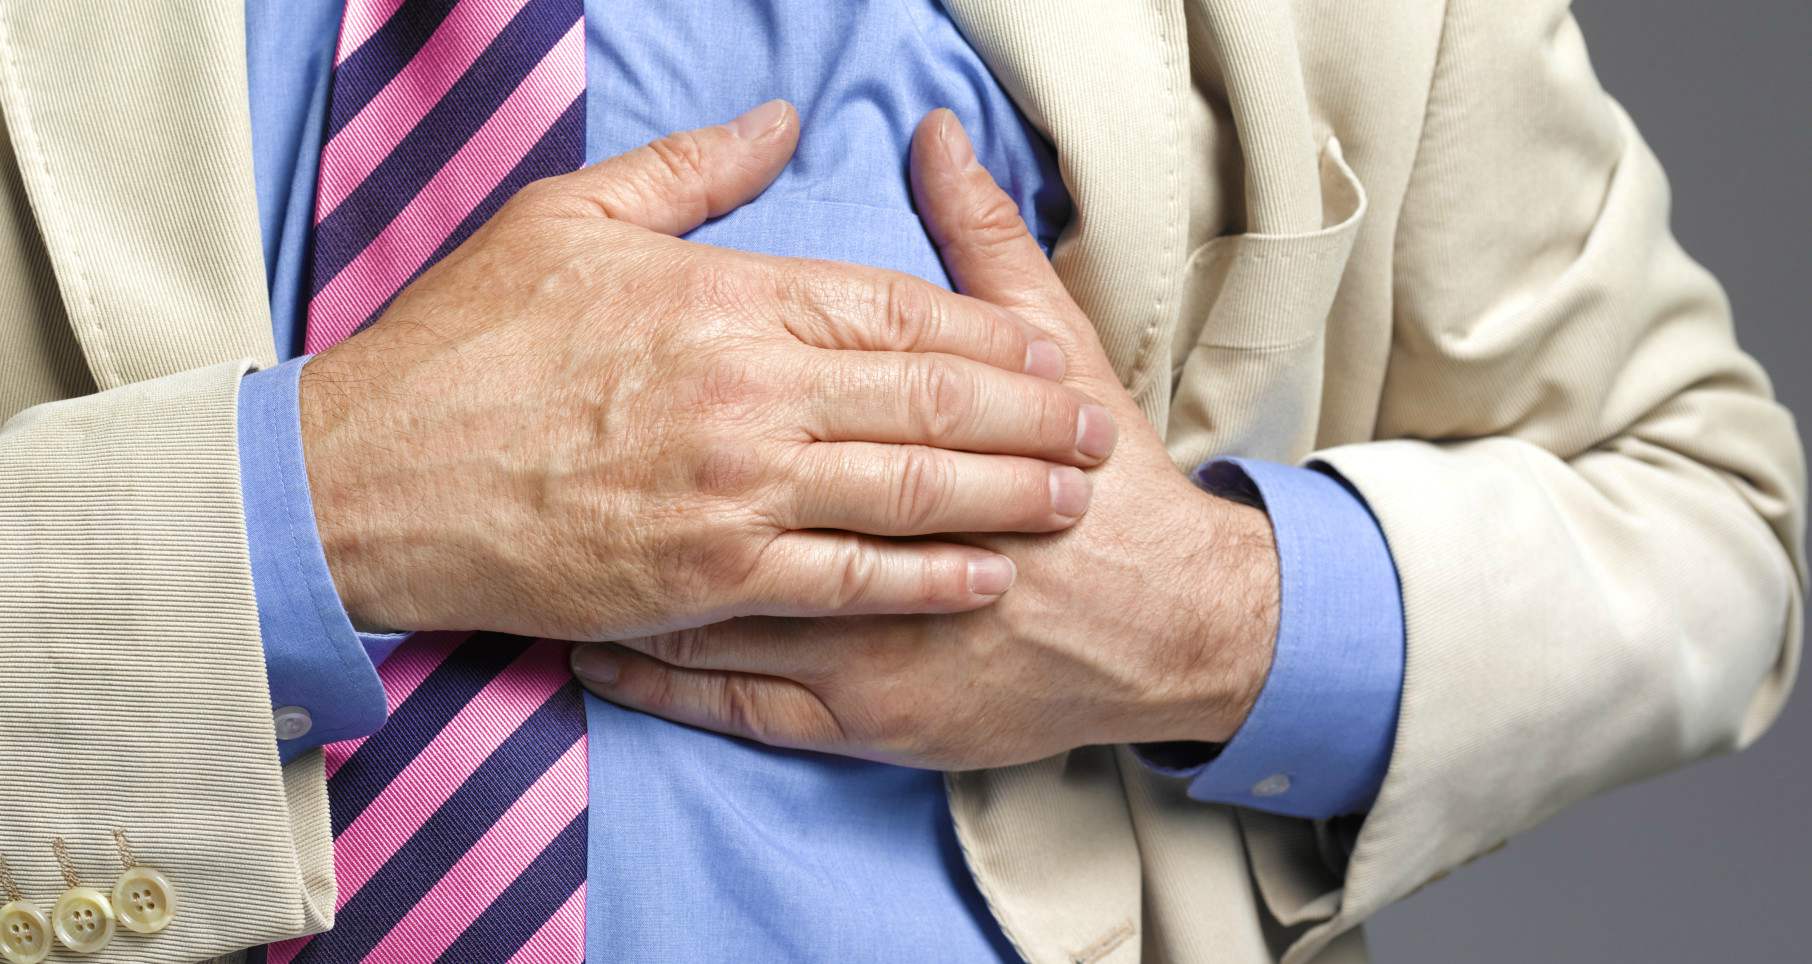 Los infartos, ictus y anginas de pecho son los padecimientos que más víctimas cobran cada año después del cáncer